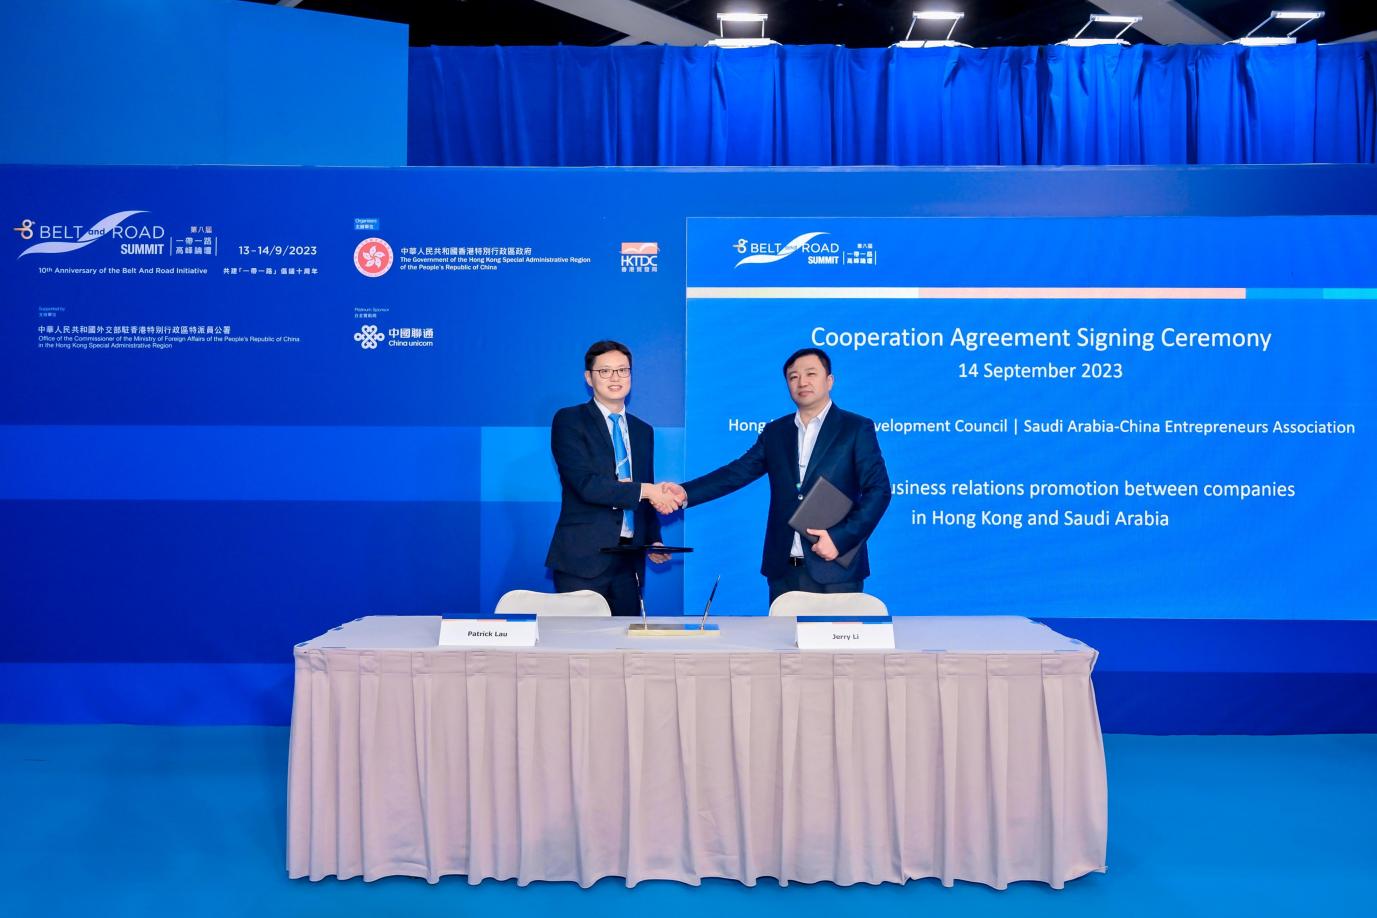 Jerry Li ký biên bản ghi nhớ với Patrick Lau, phó giám đốc điều hành Hội đồng Phát triển Thương mại Hồng Kông